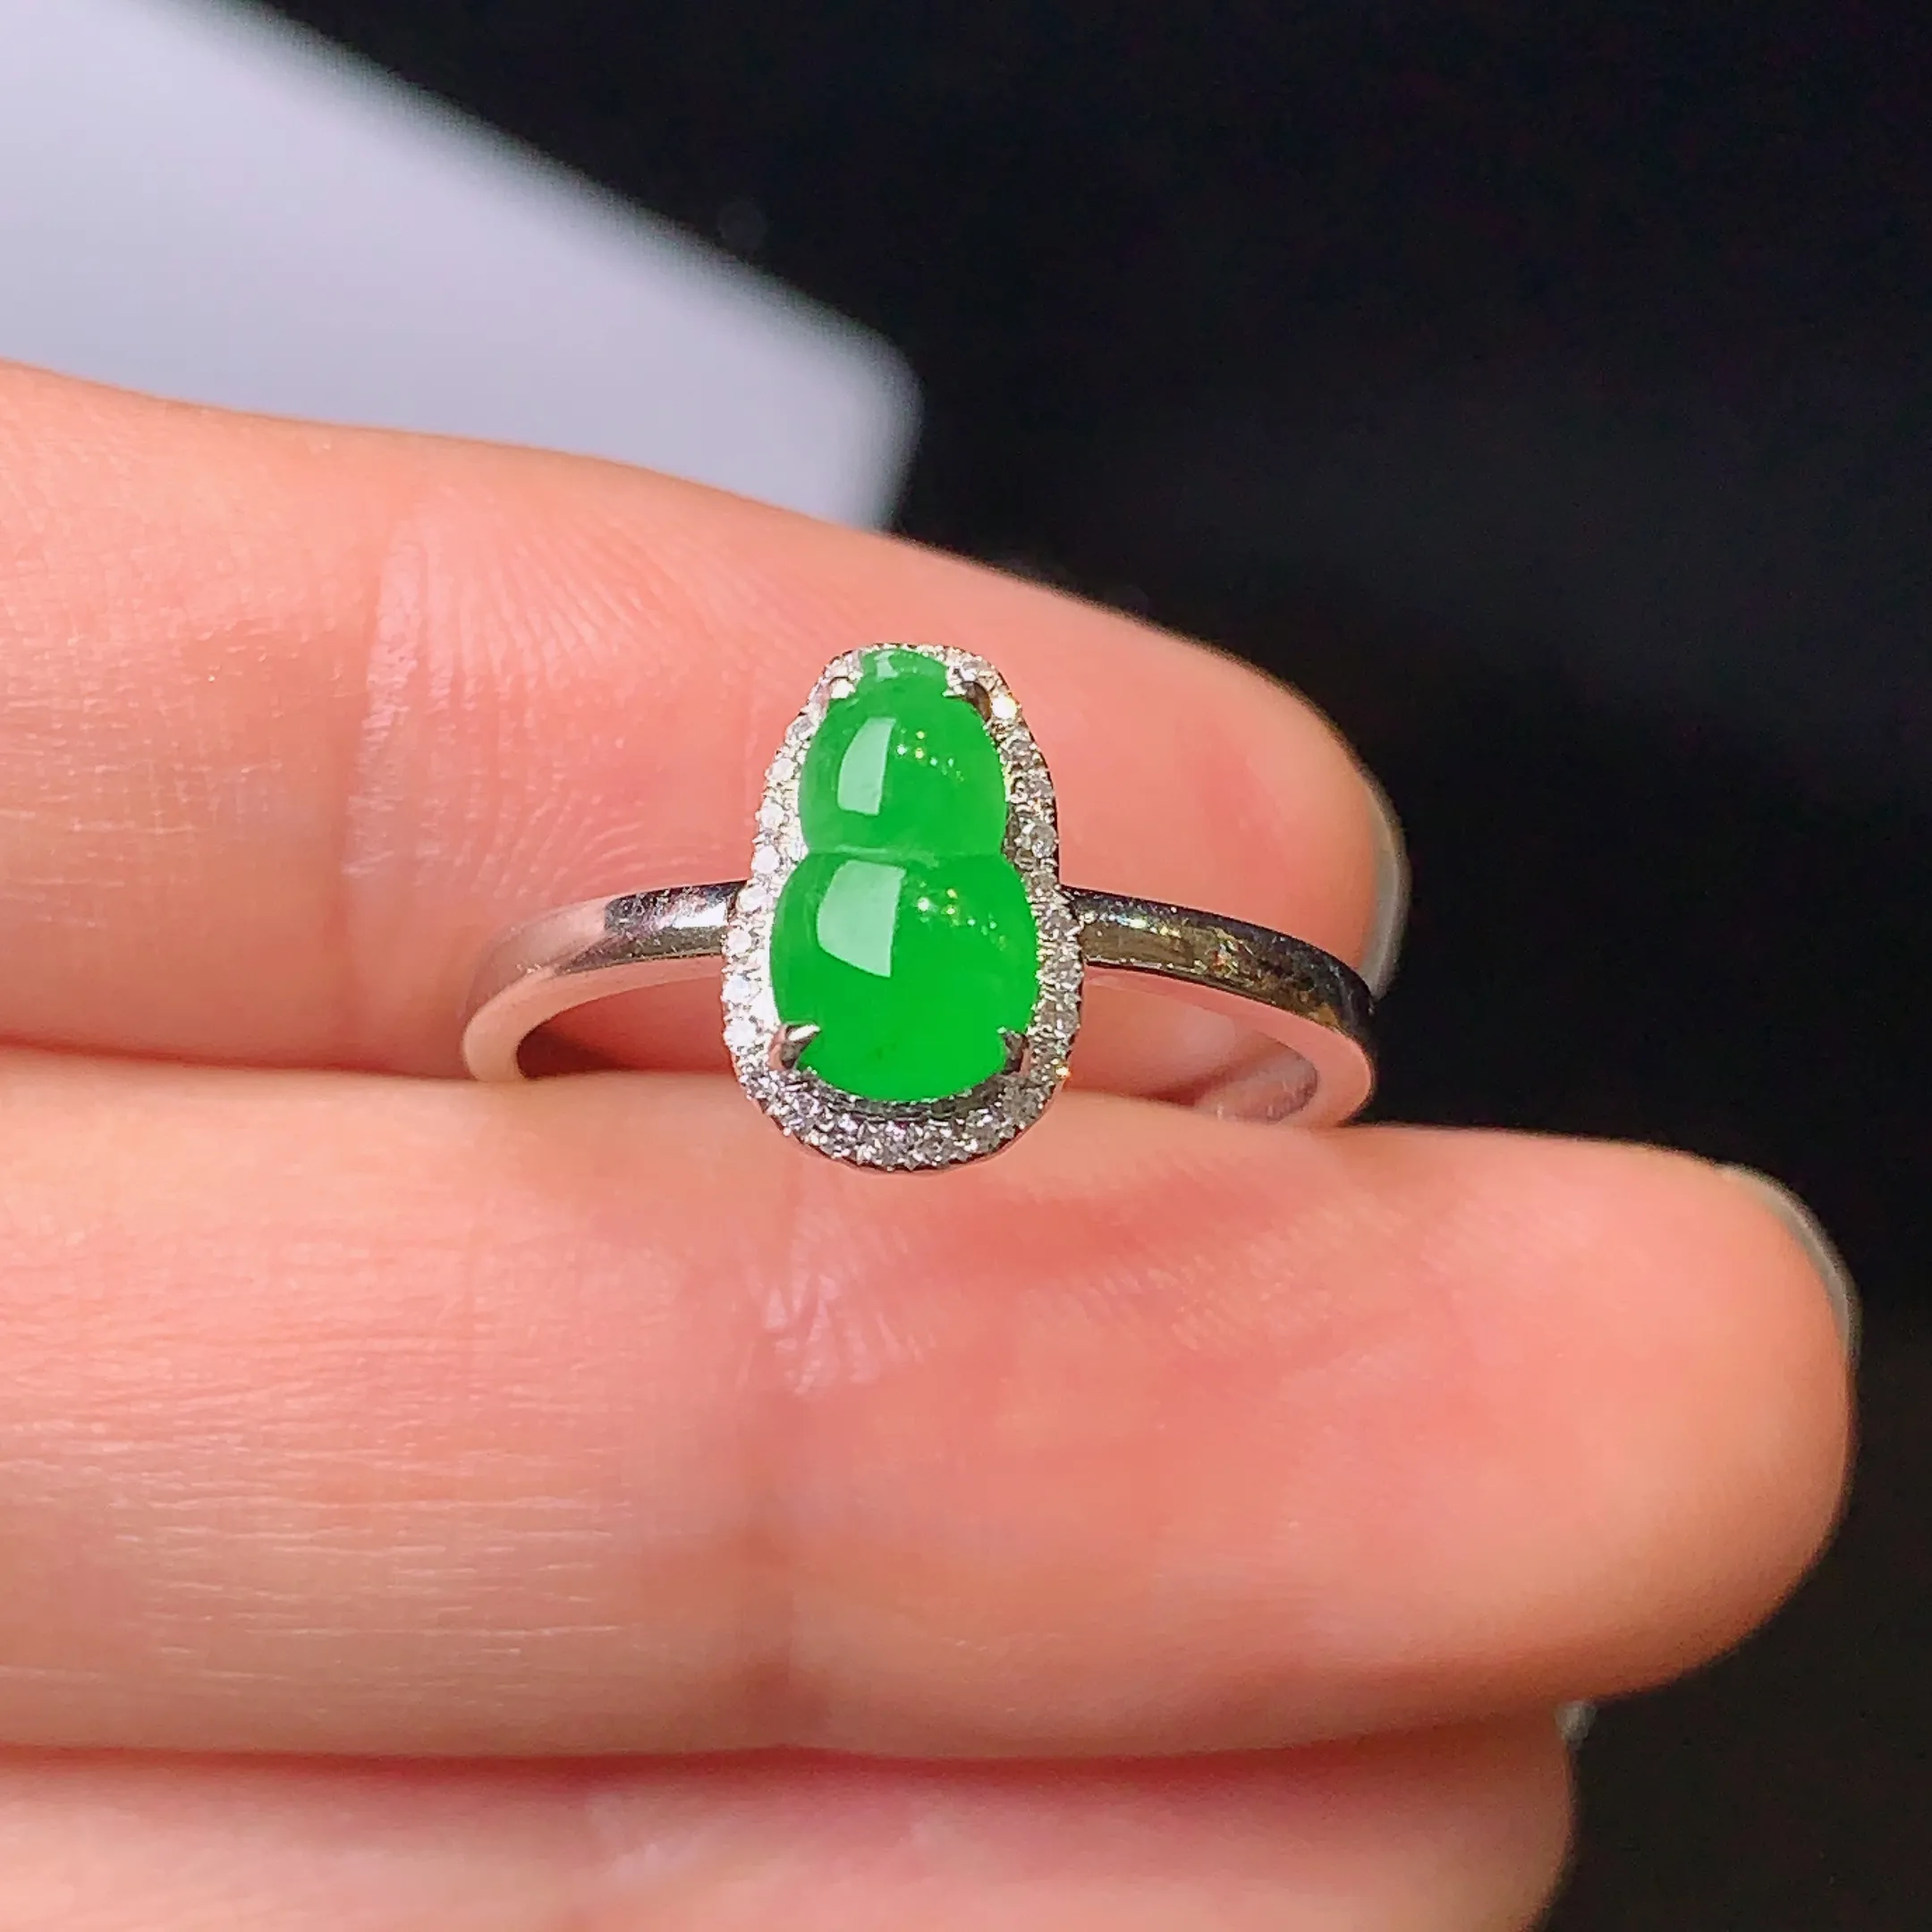 18k金钻镶嵌满绿葫芦戒指 玉质细腻 色泽艳丽 款式新颖时尚唯美 圈口13.5整体尺寸10.5*6.